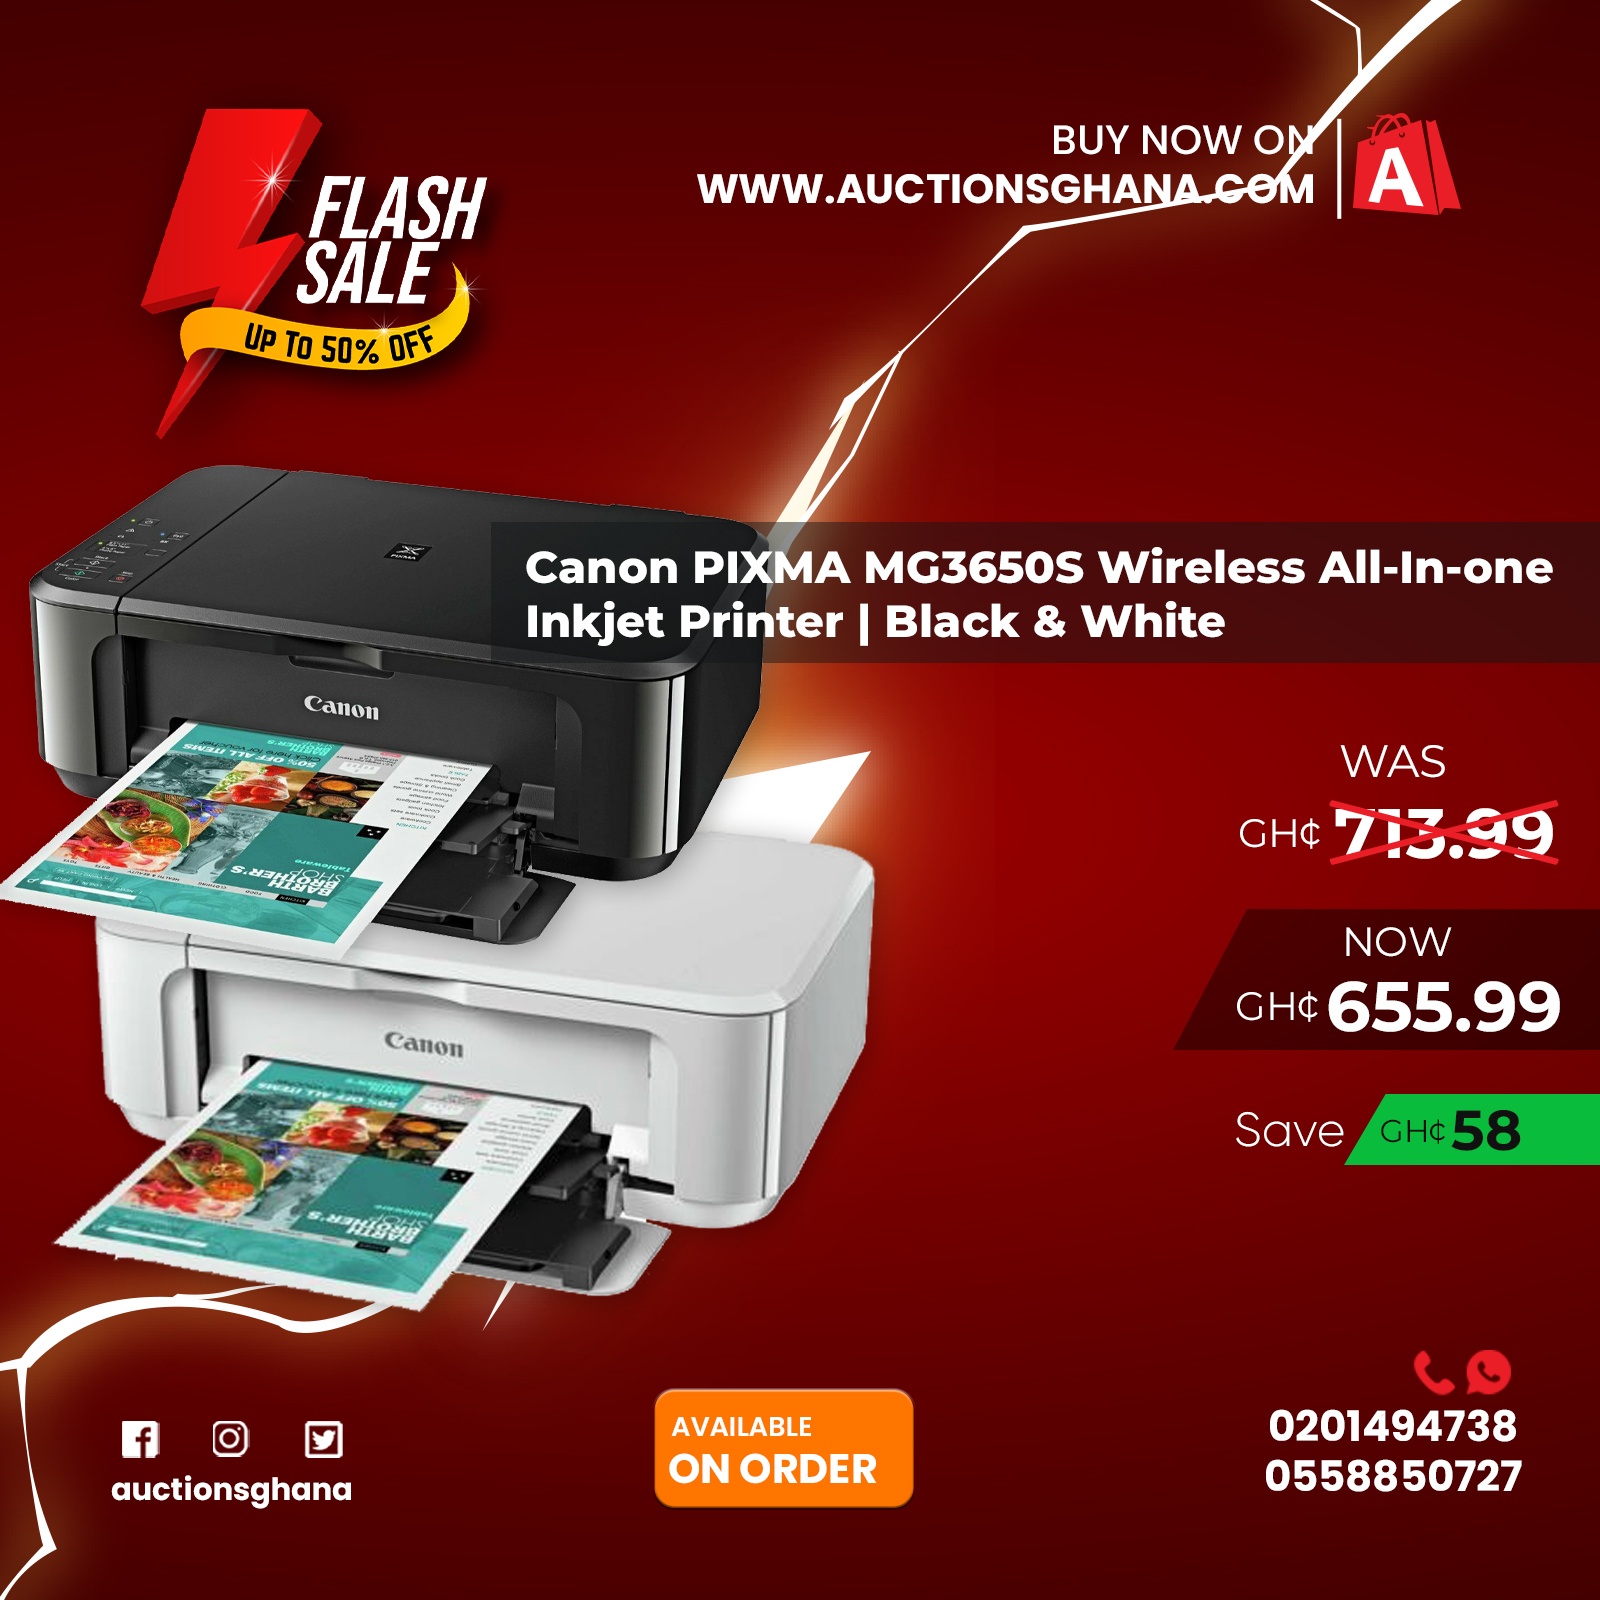 Buy Canon PIXMA MG3650S Wireless Inkjet Printer - Black